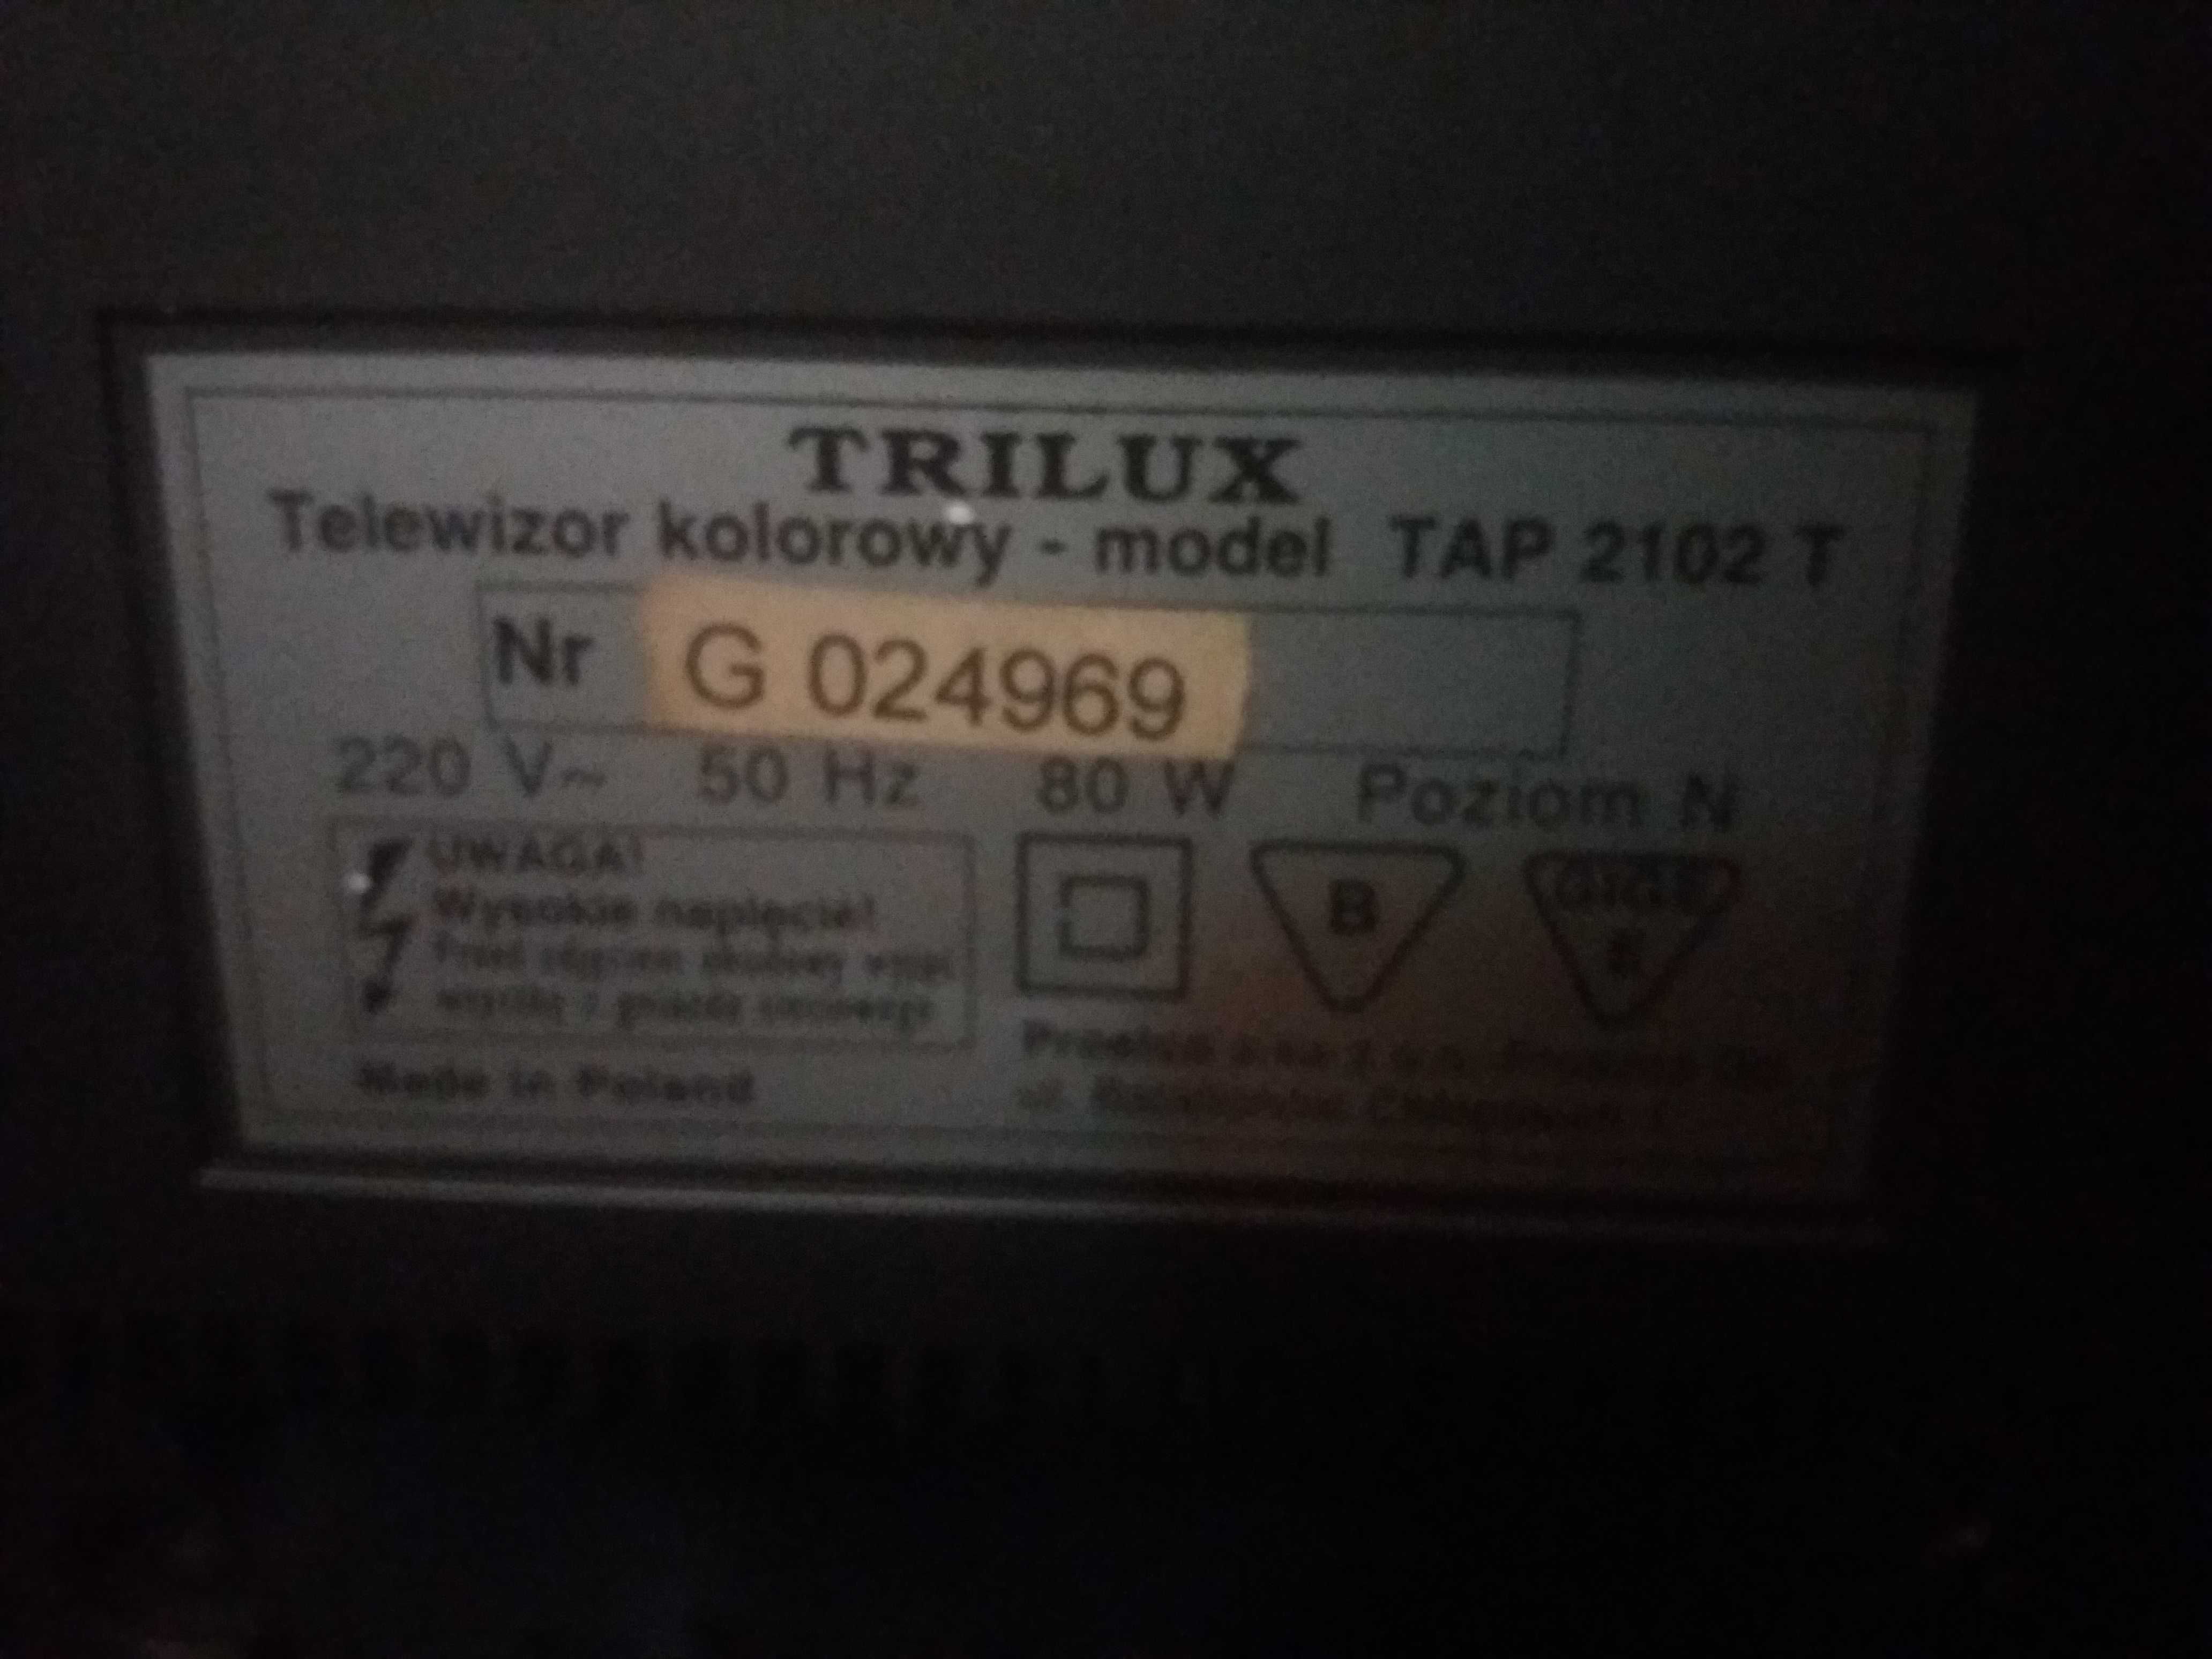 Telewizor kolorowy TRILUX TAP 2102 T